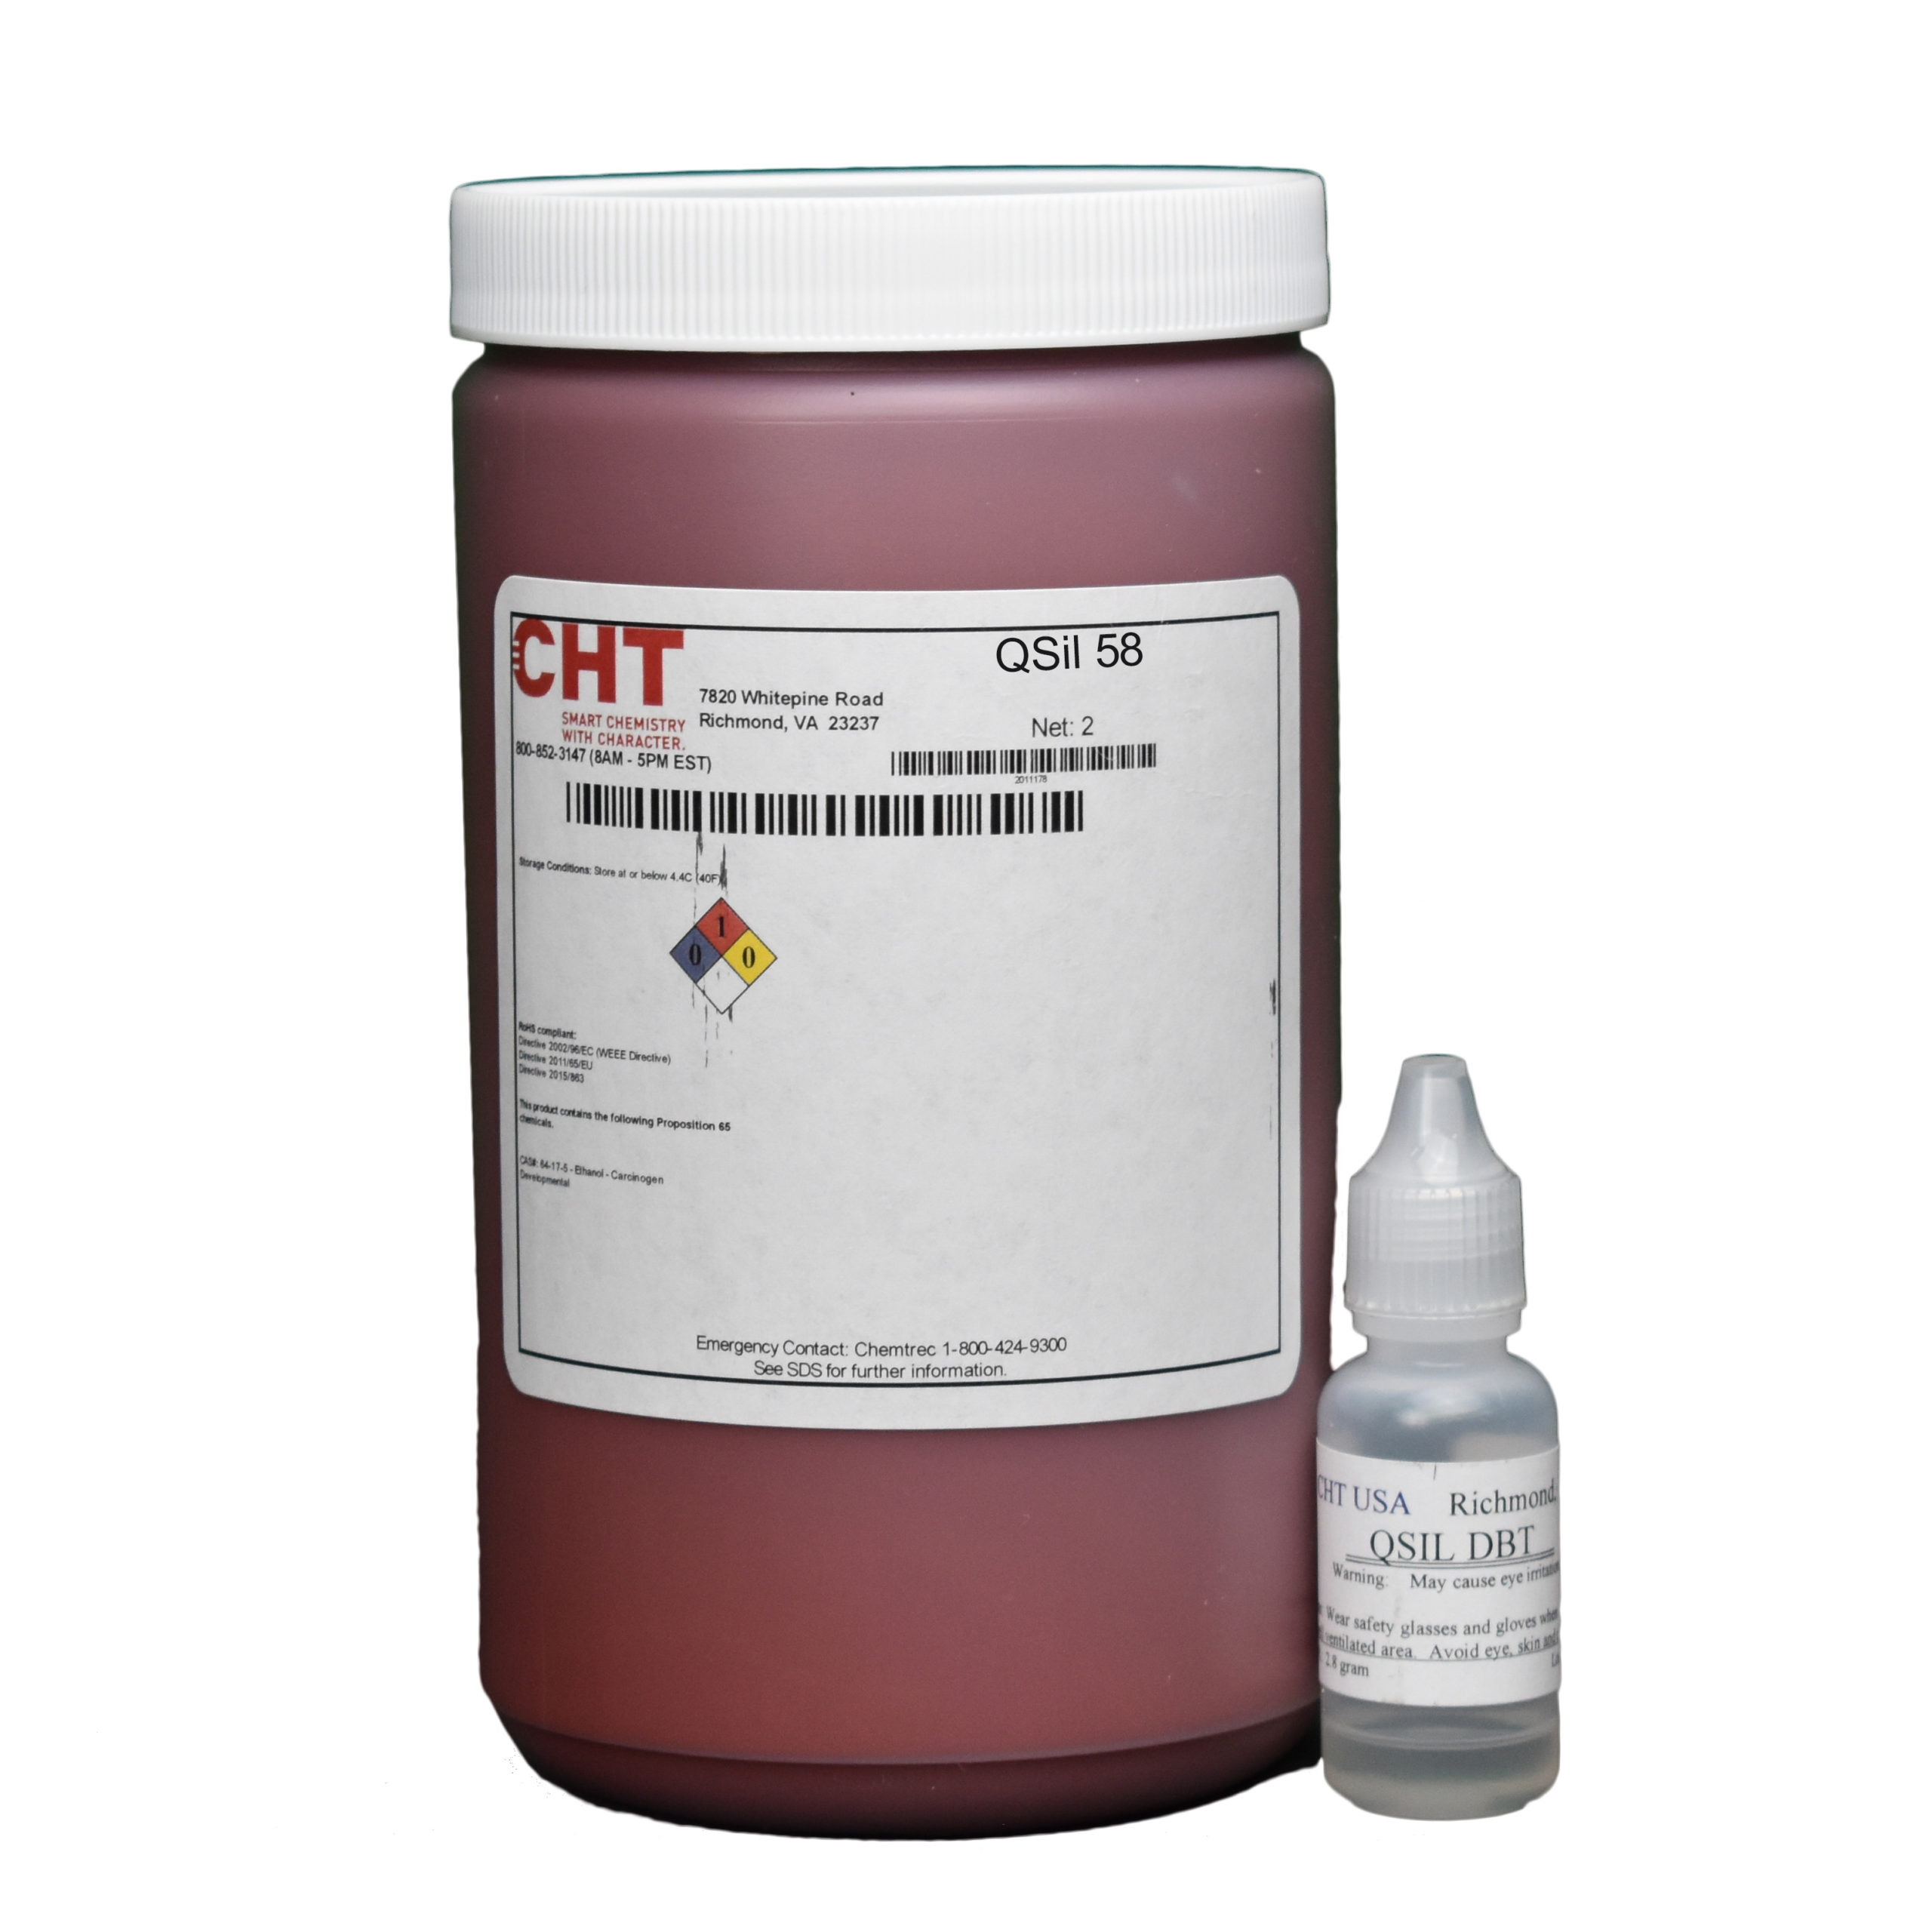 Generic Casting Repair Glue, High Temperature Resistant Liquid